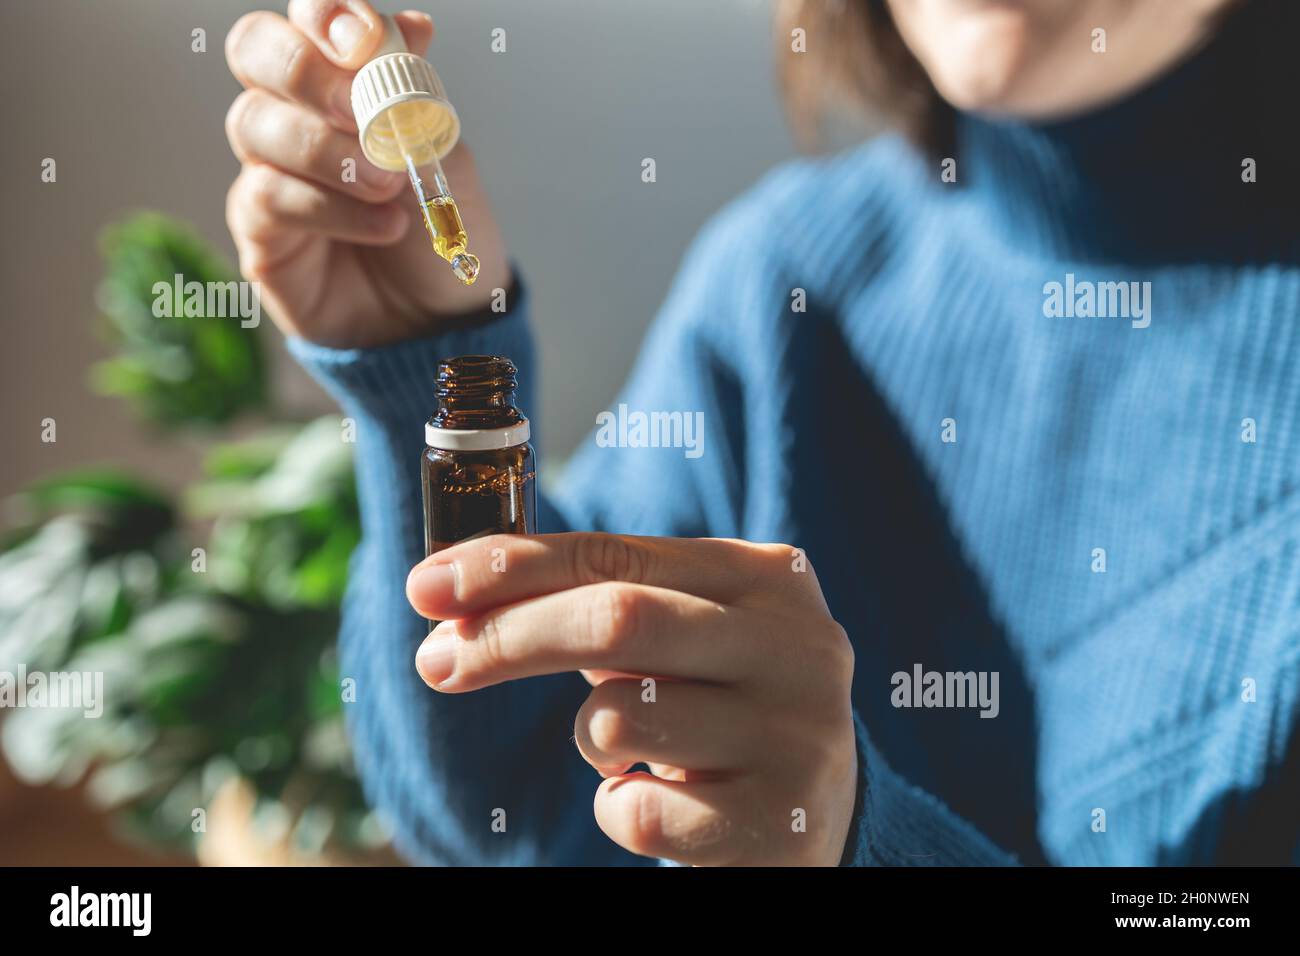 Thérapie alternative au CBD - femme tenant une bouteille d'huile de cannabis pour le traitement de l'anxiété Banque D'Images